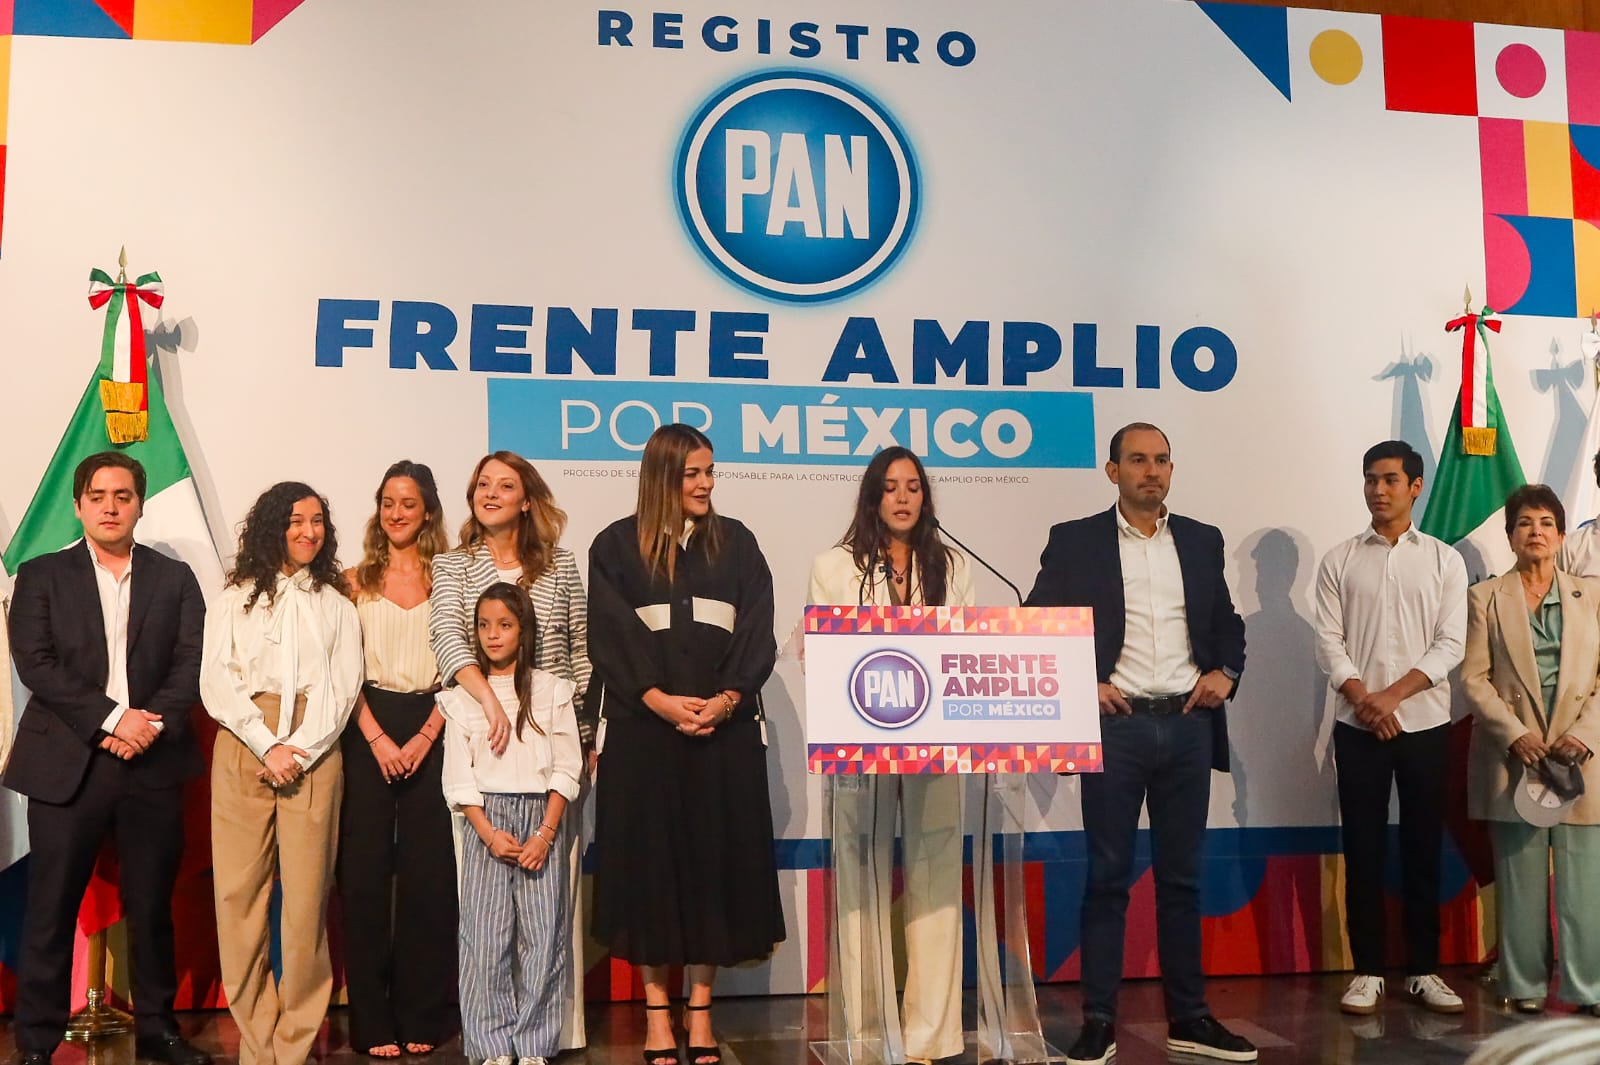 Comediantes, activistas y hasta Juanito buscan ser candidatos de la oposición